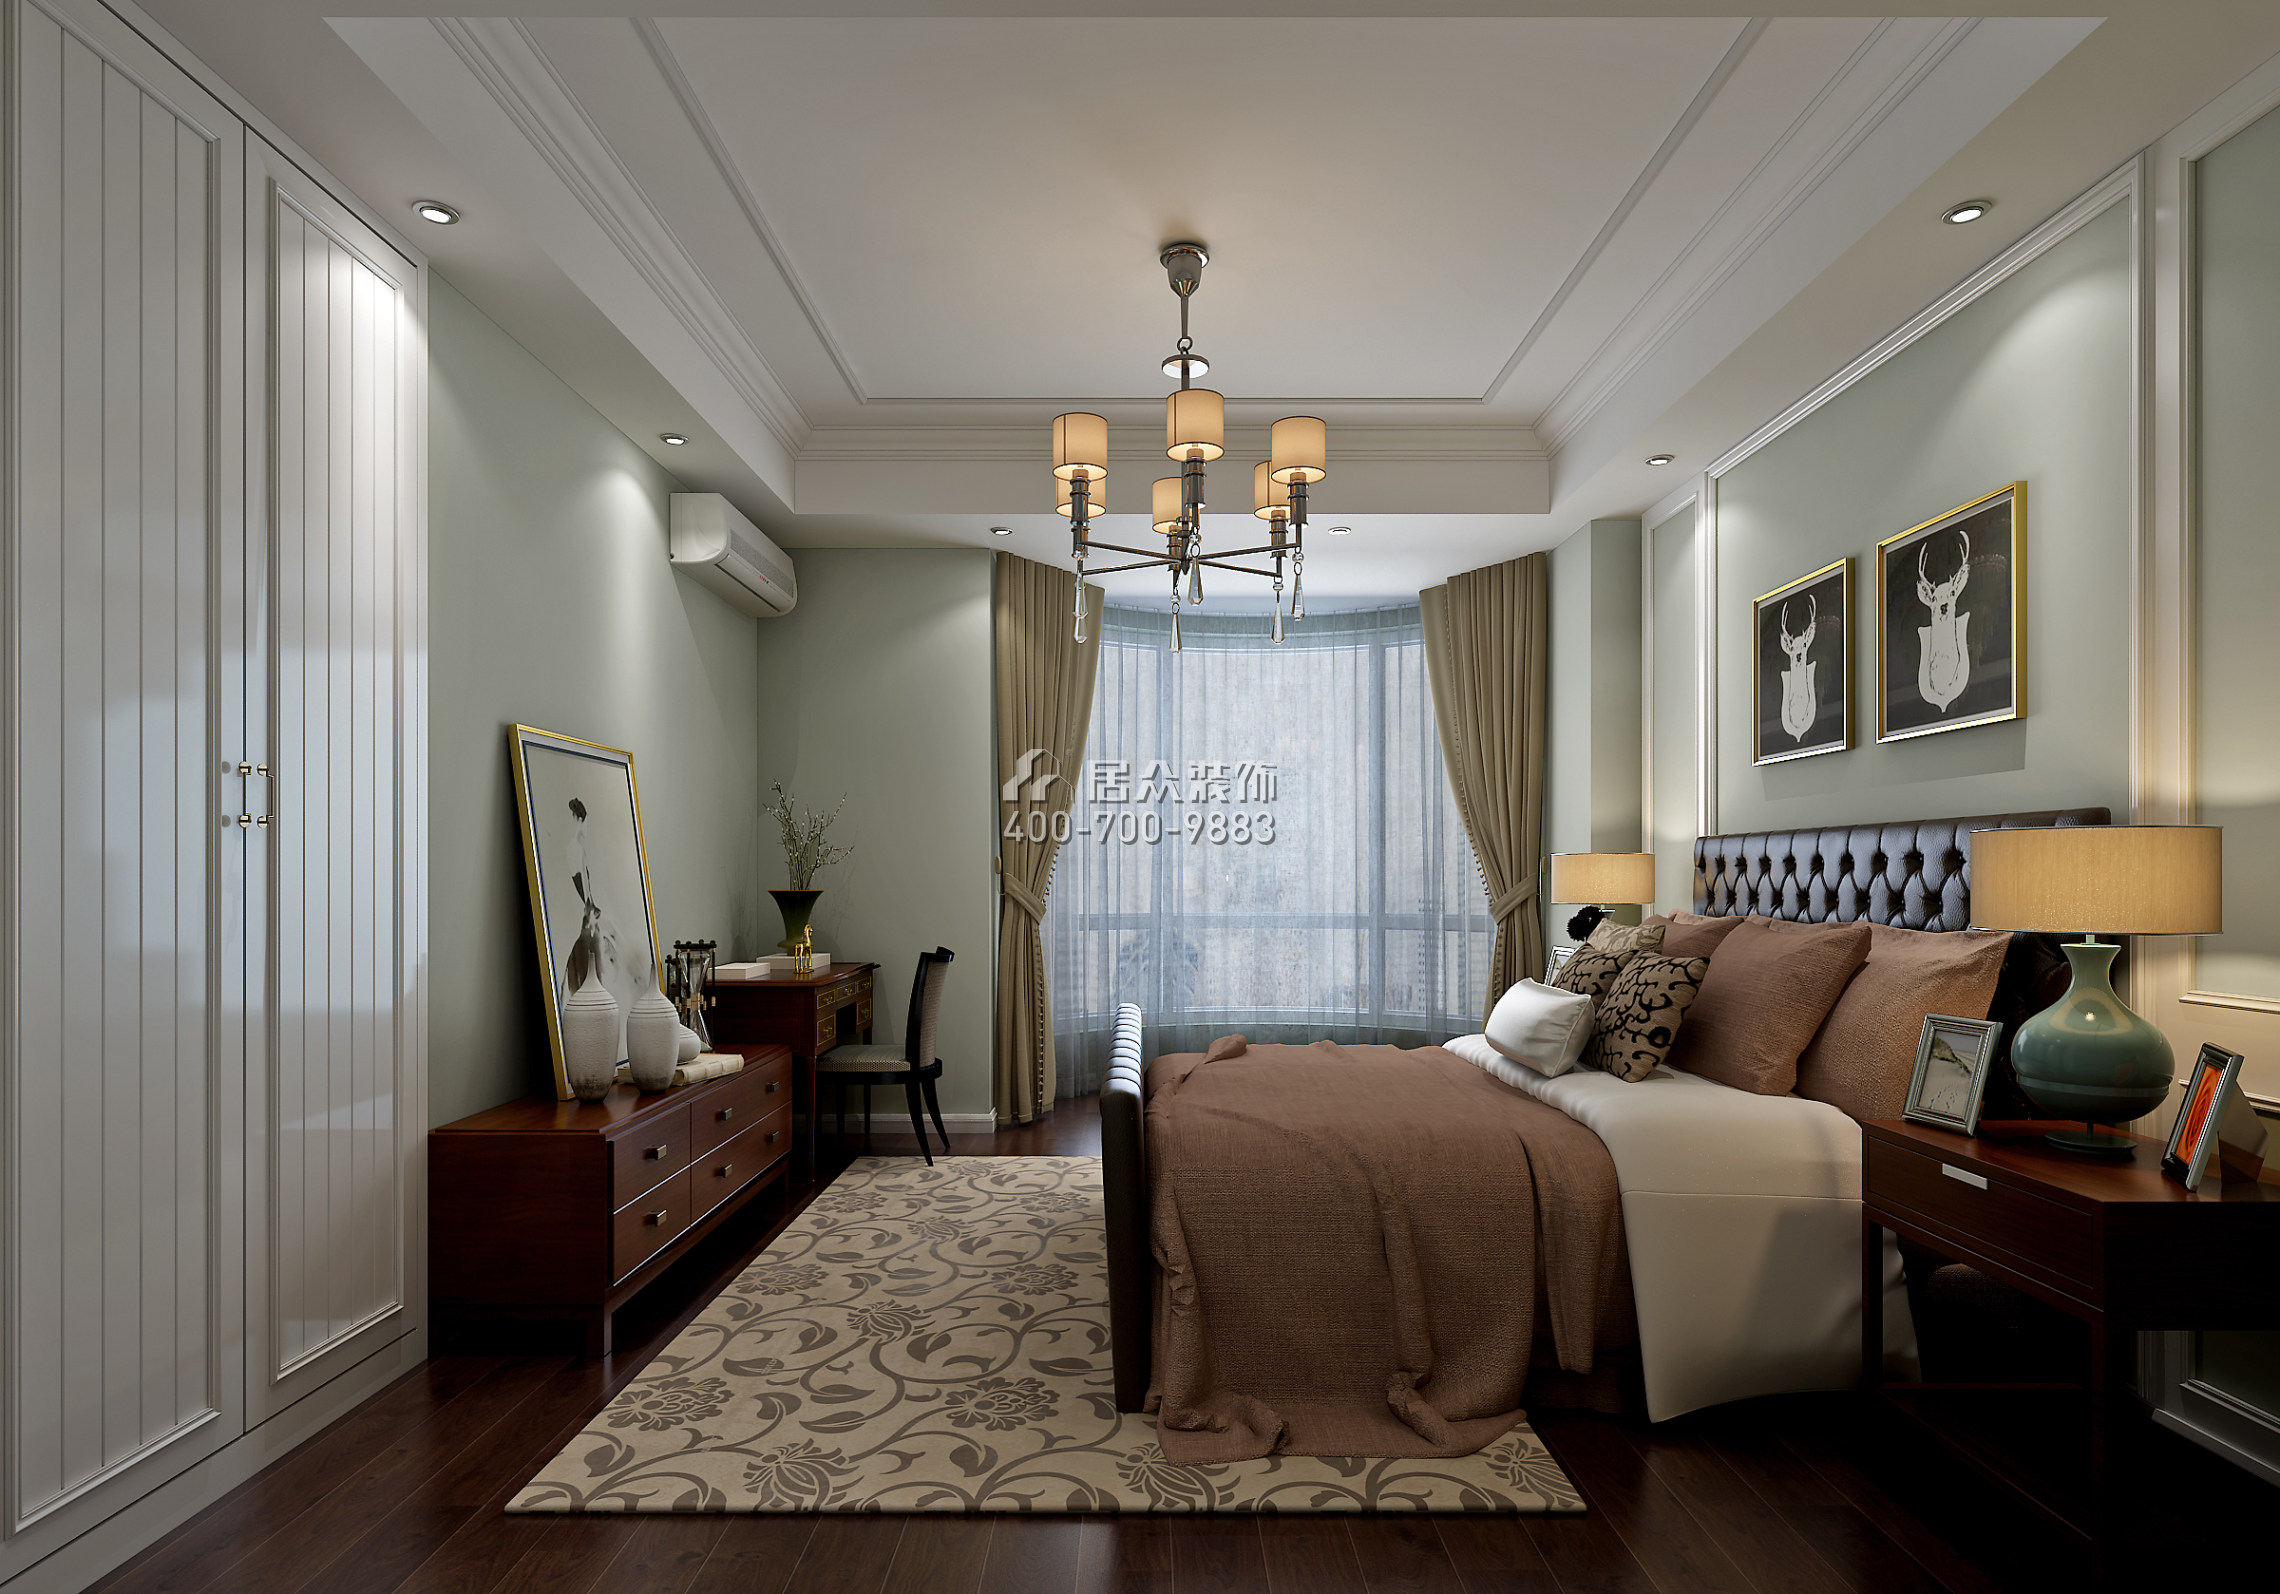 海景国际140平方米美式风格平层户型卧室装修效果图